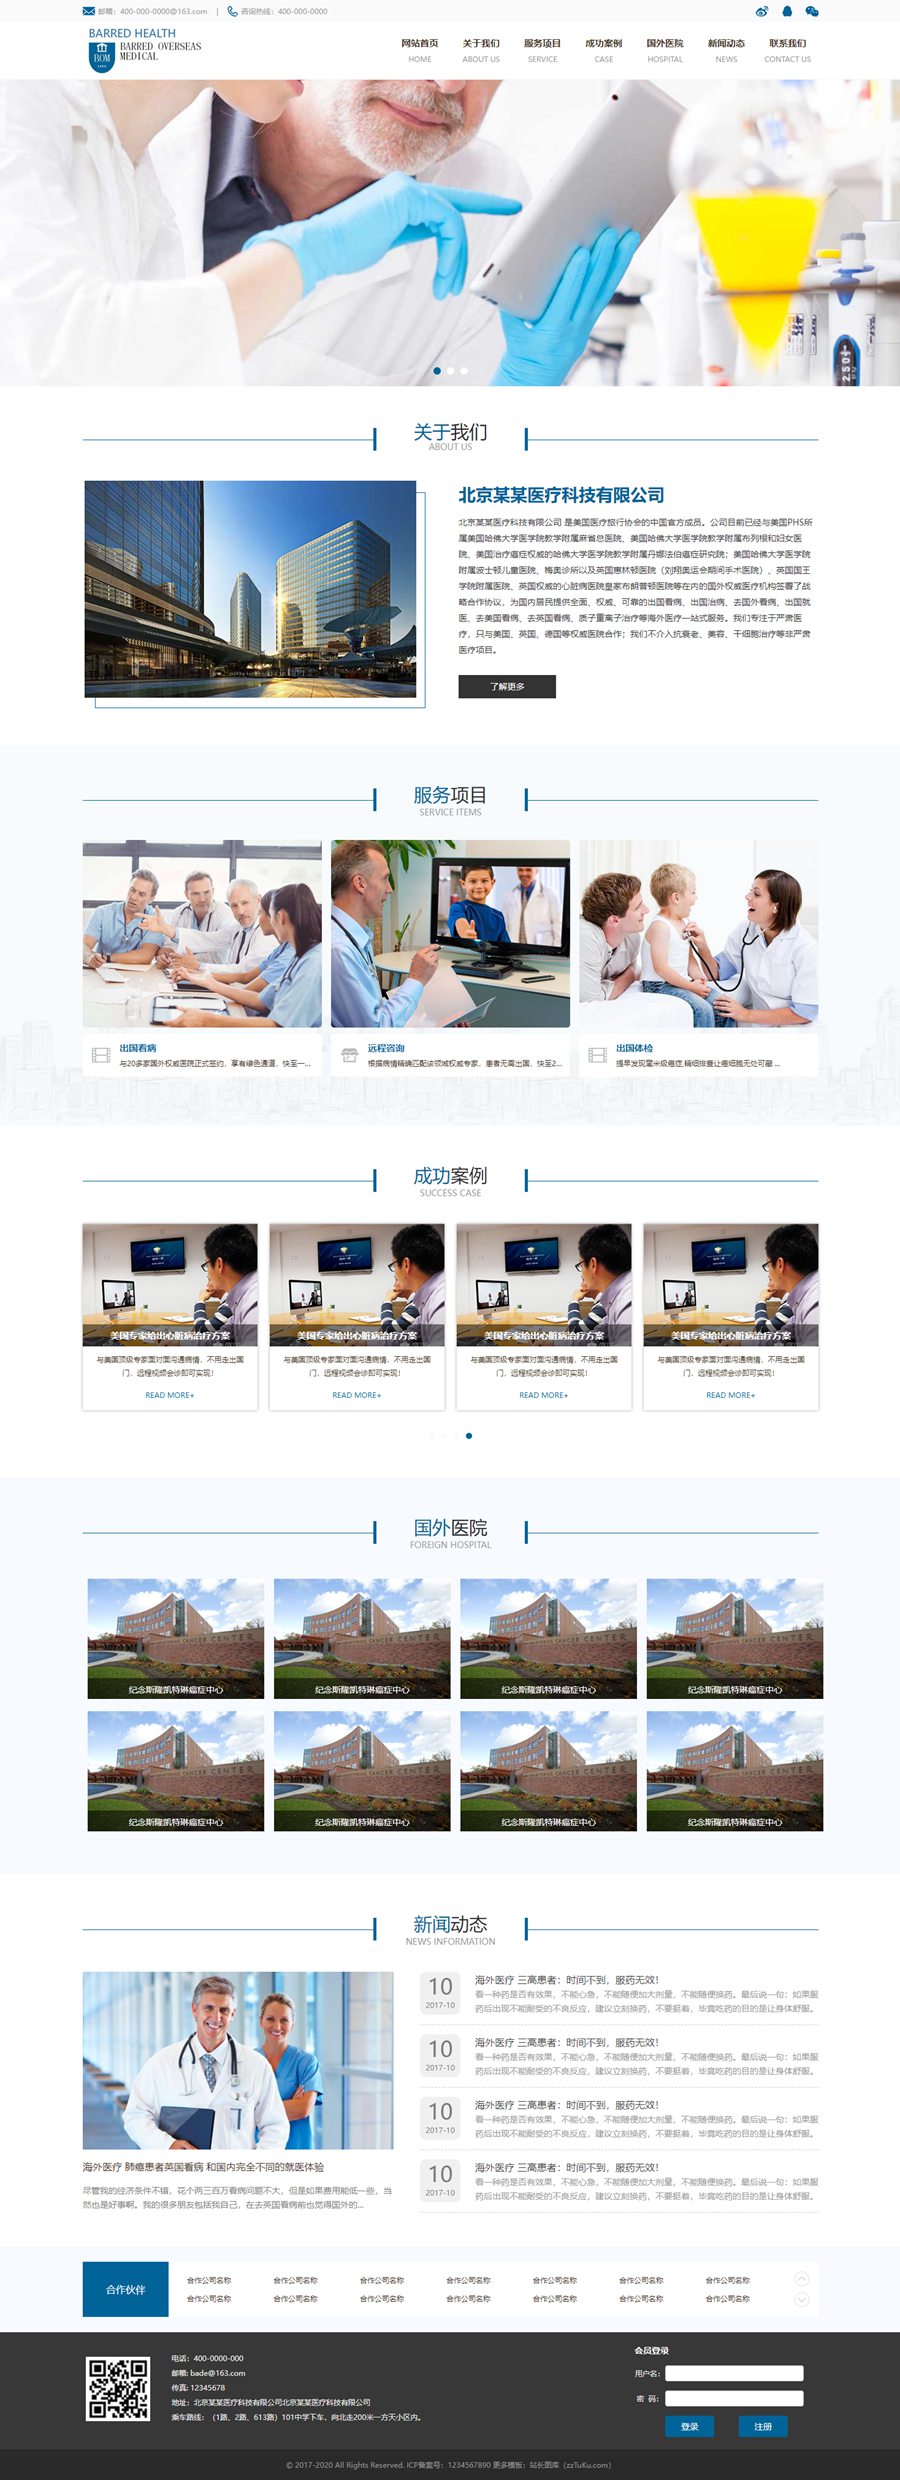 大气医疗设备医生大健康蓝色网站模板